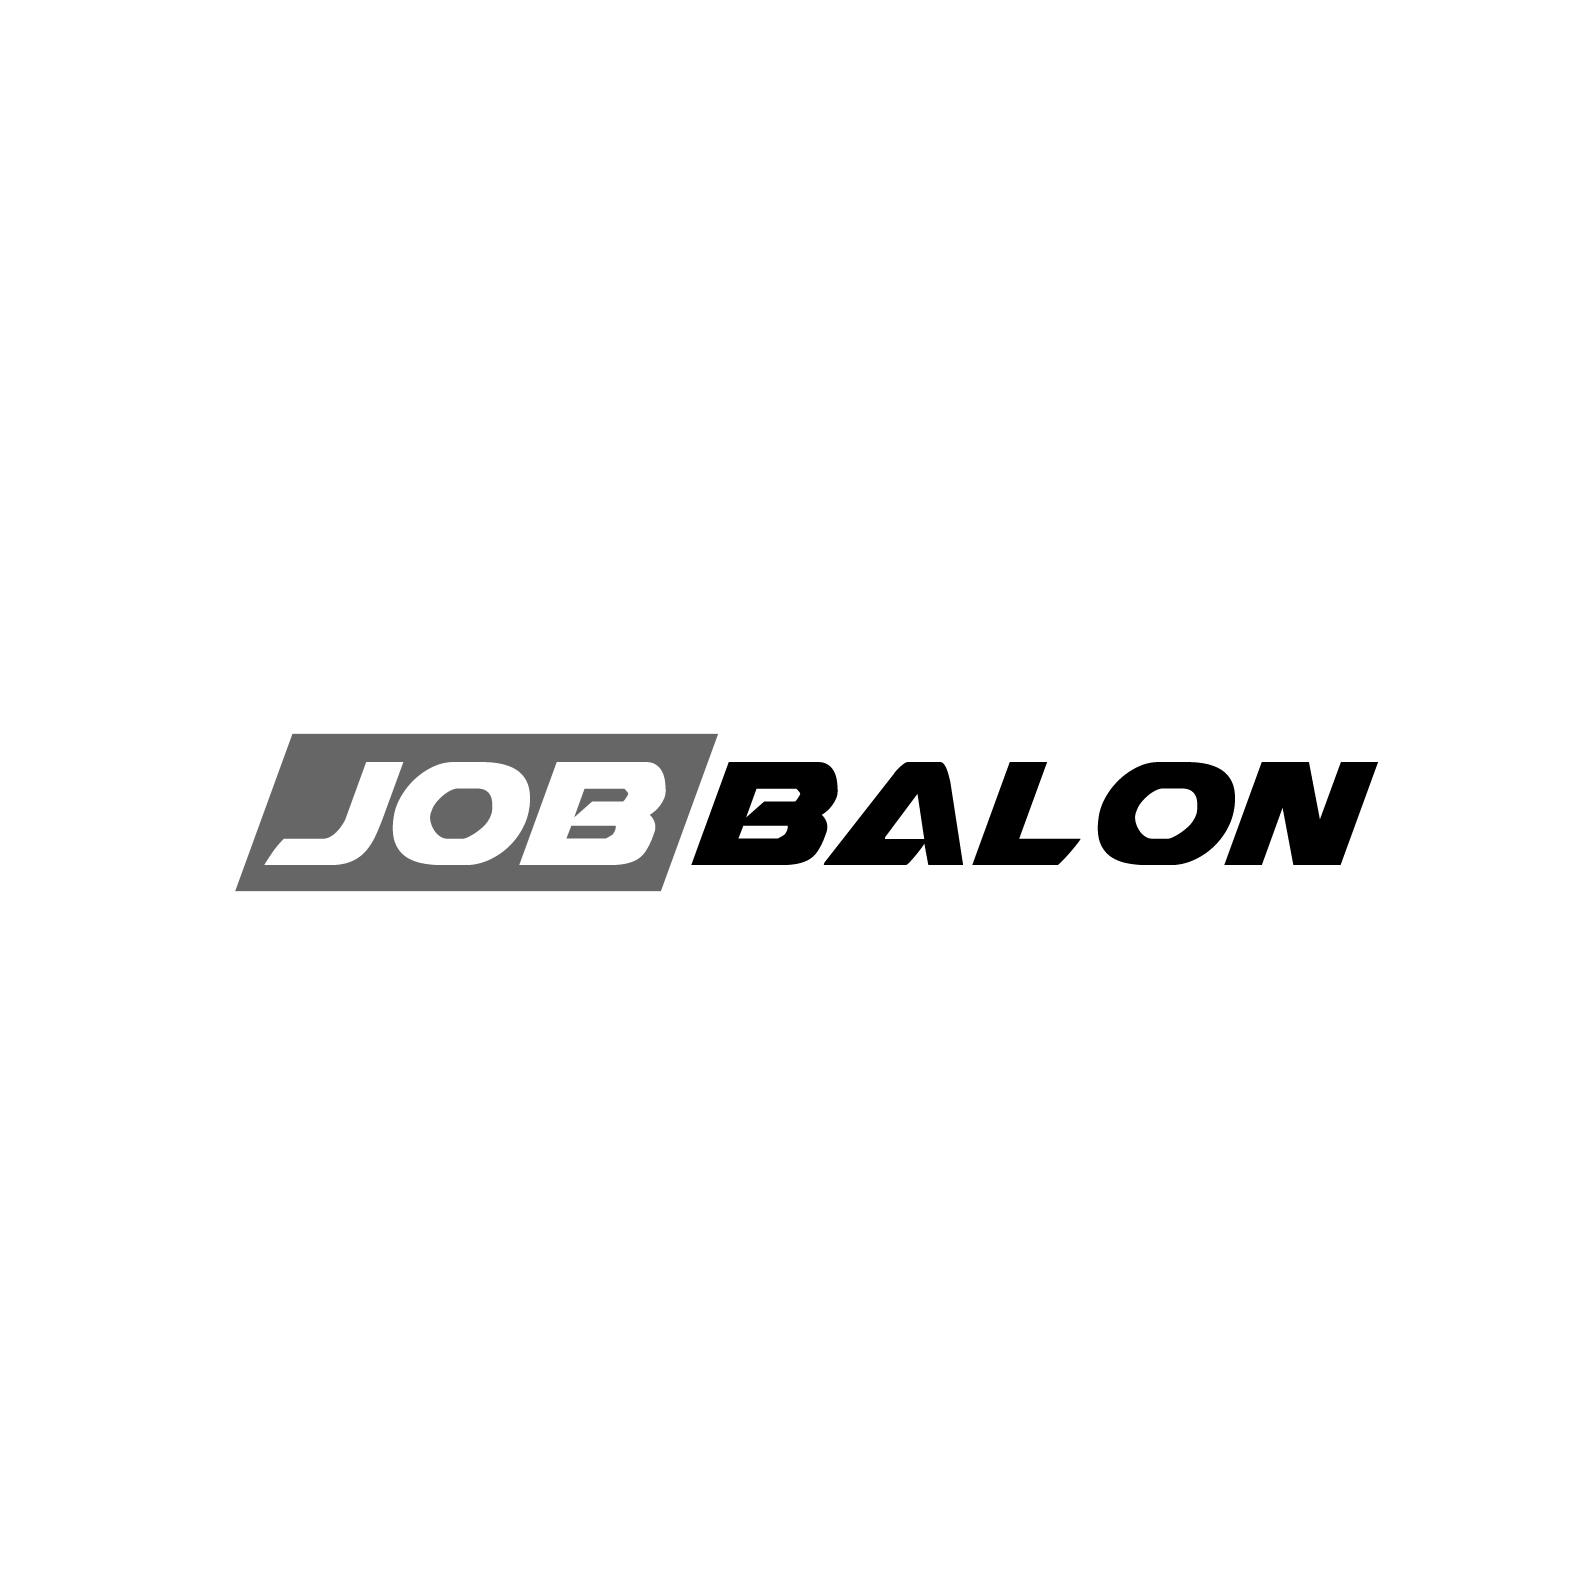 转让商标-JOB BALON